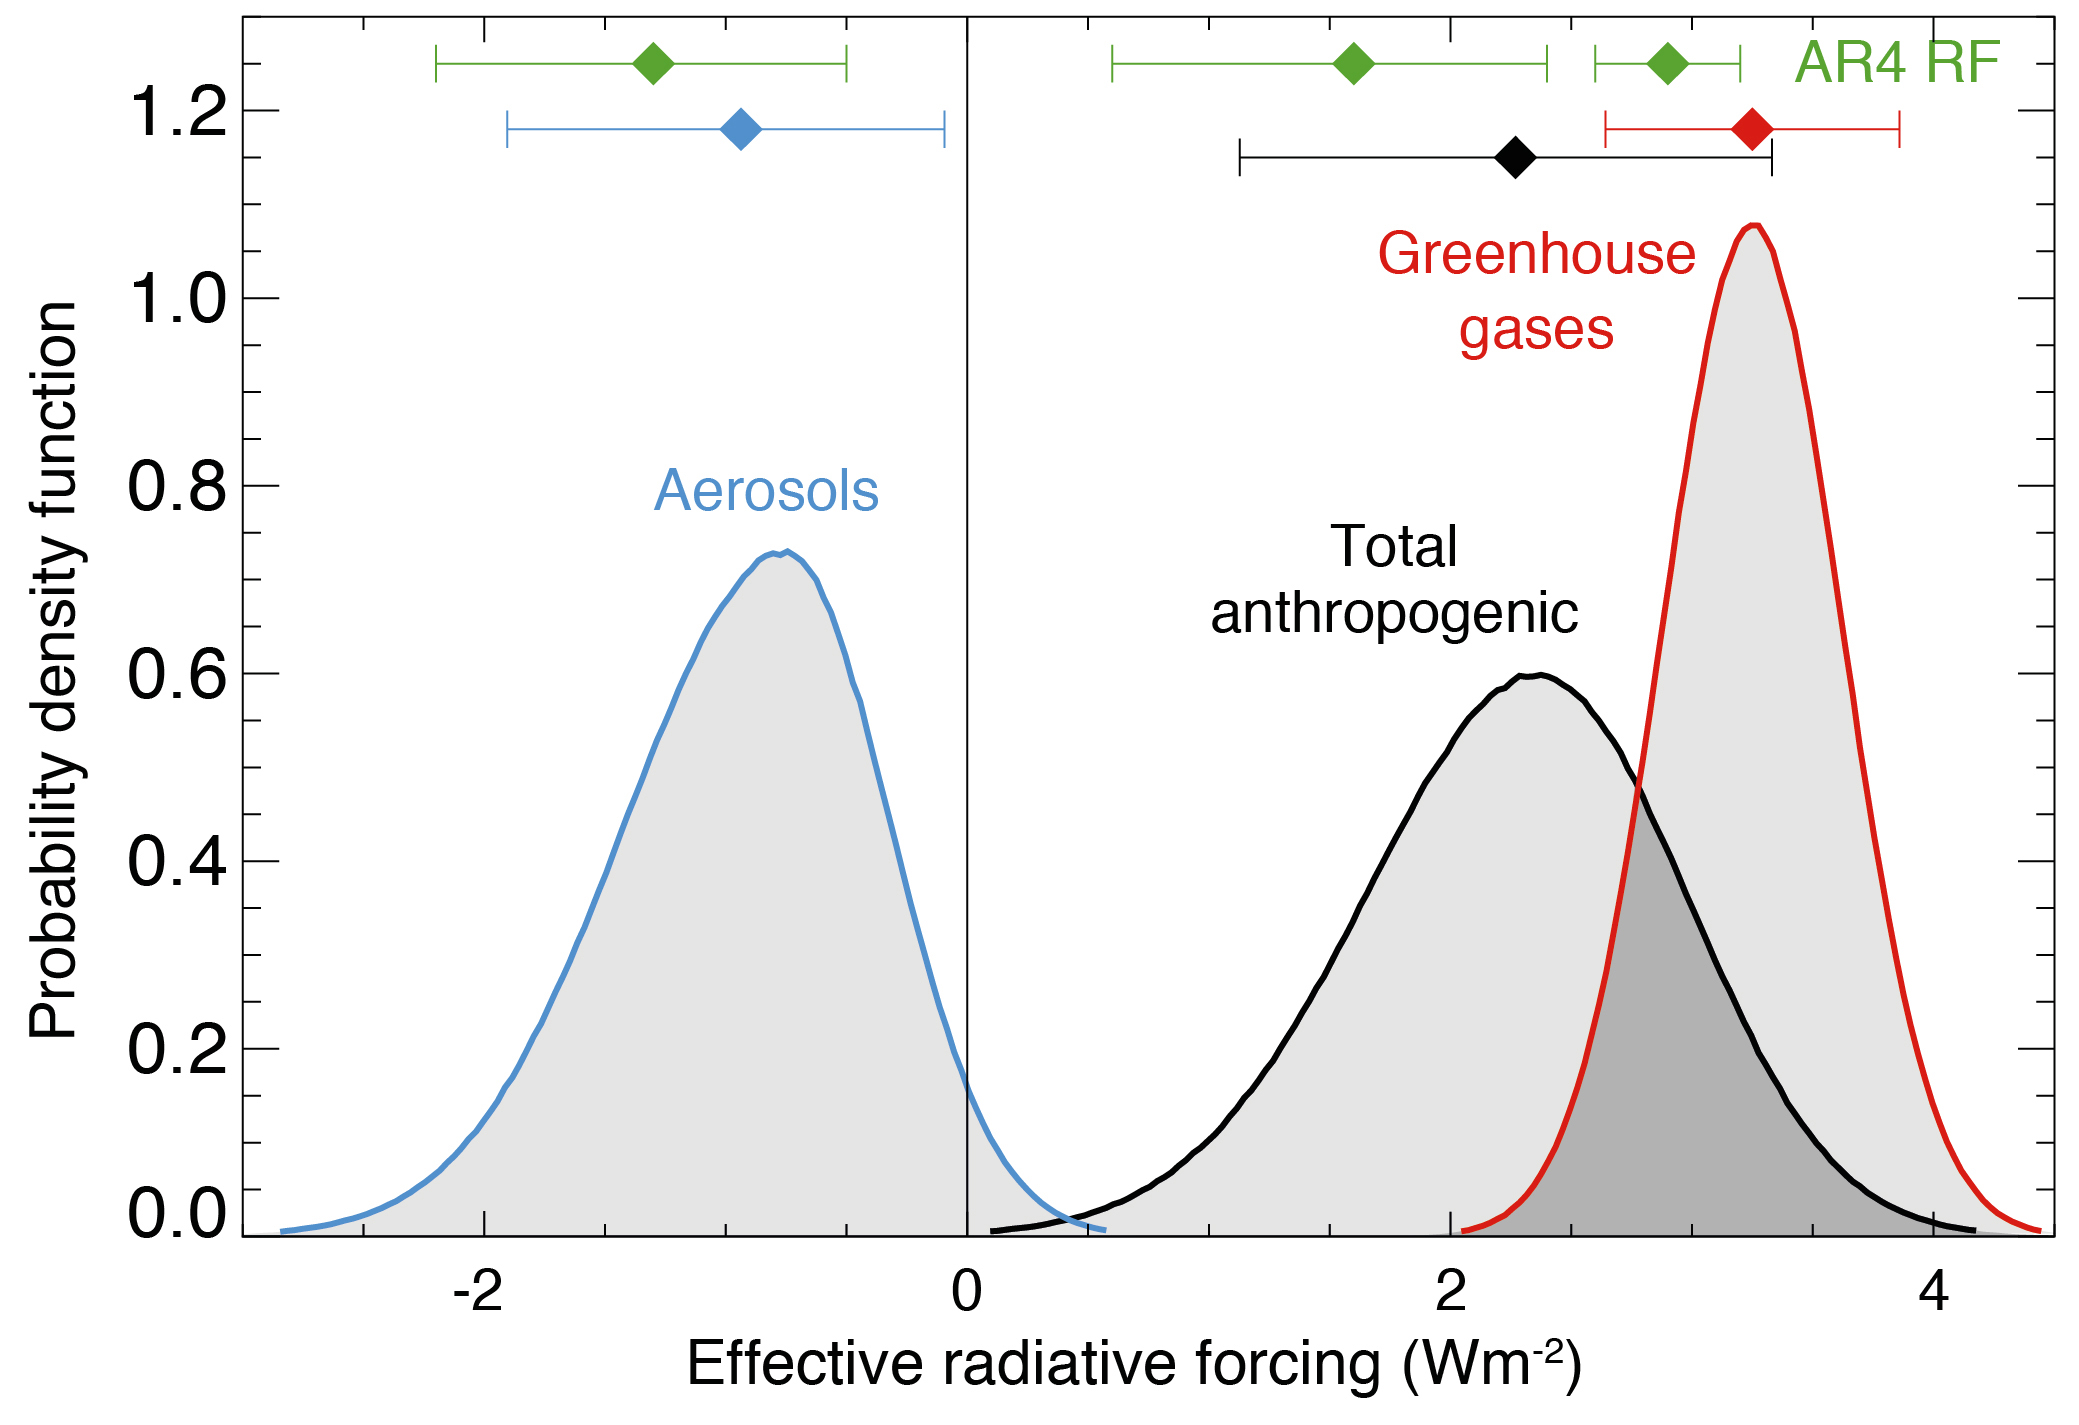 Hvor store forceringer giver drivhusgasser og aerosoler?